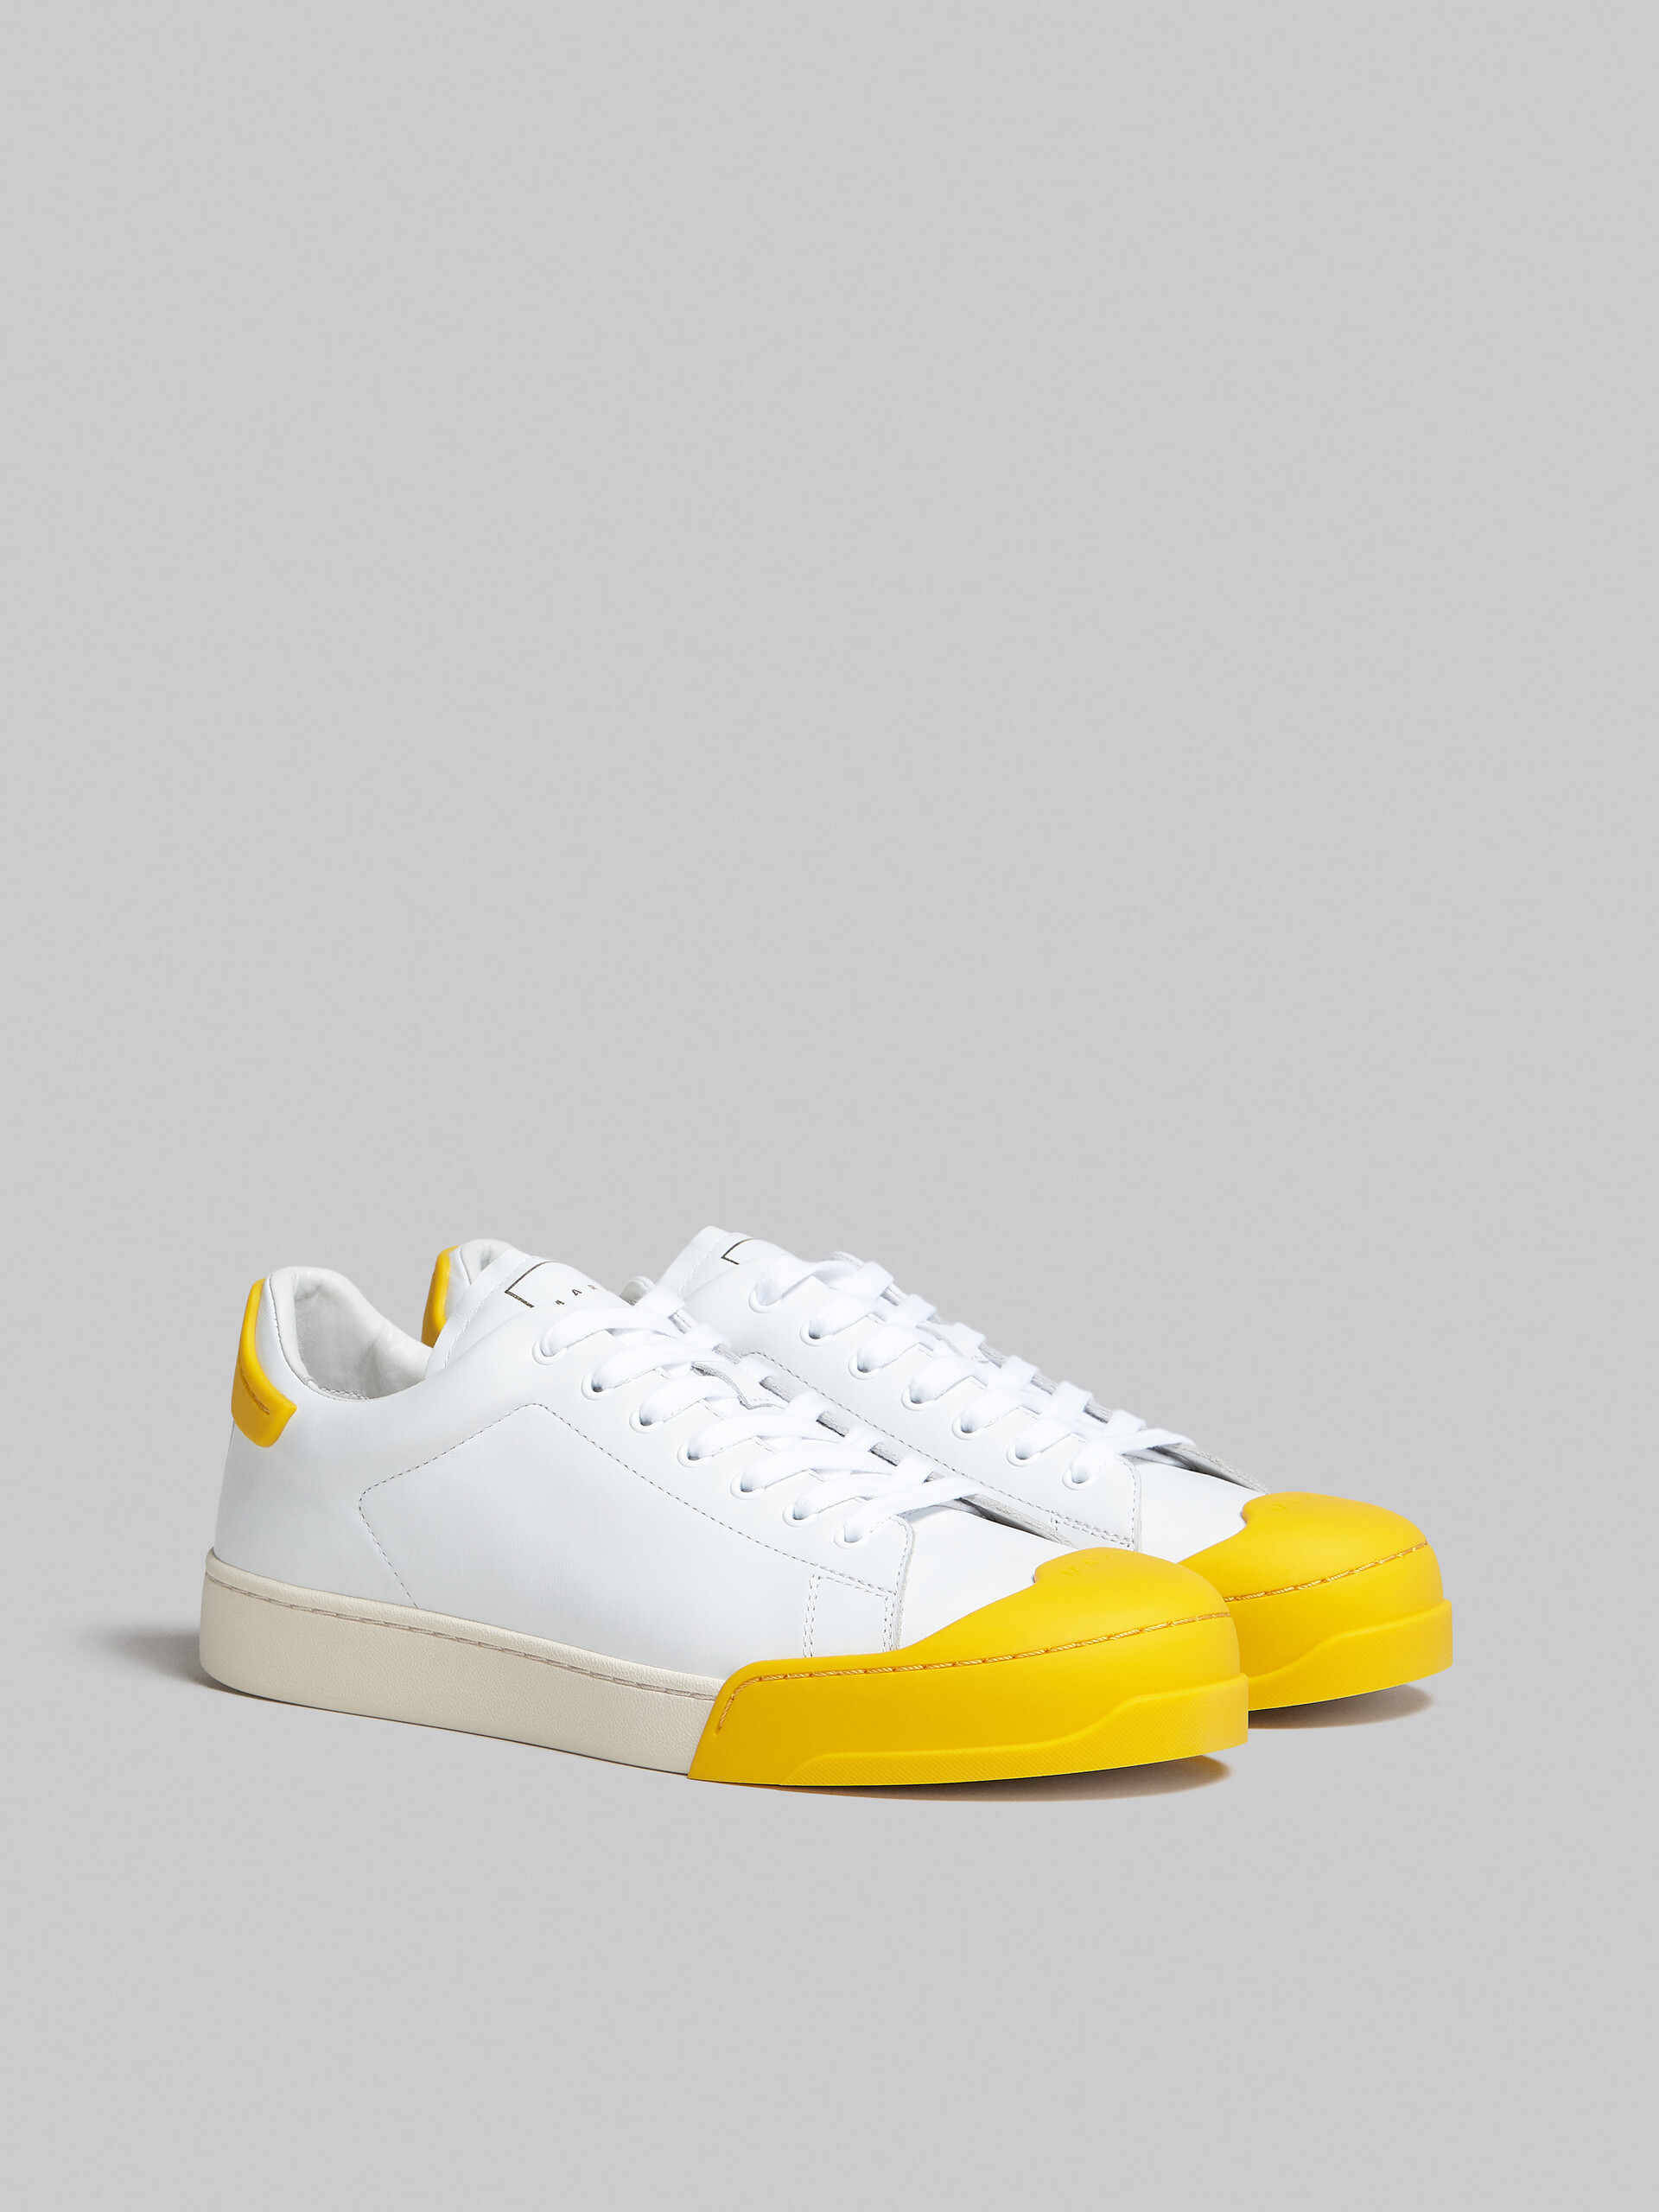 Sneakers Dada Bumper en cuir blanc et jaune - Sneakers - Image 2